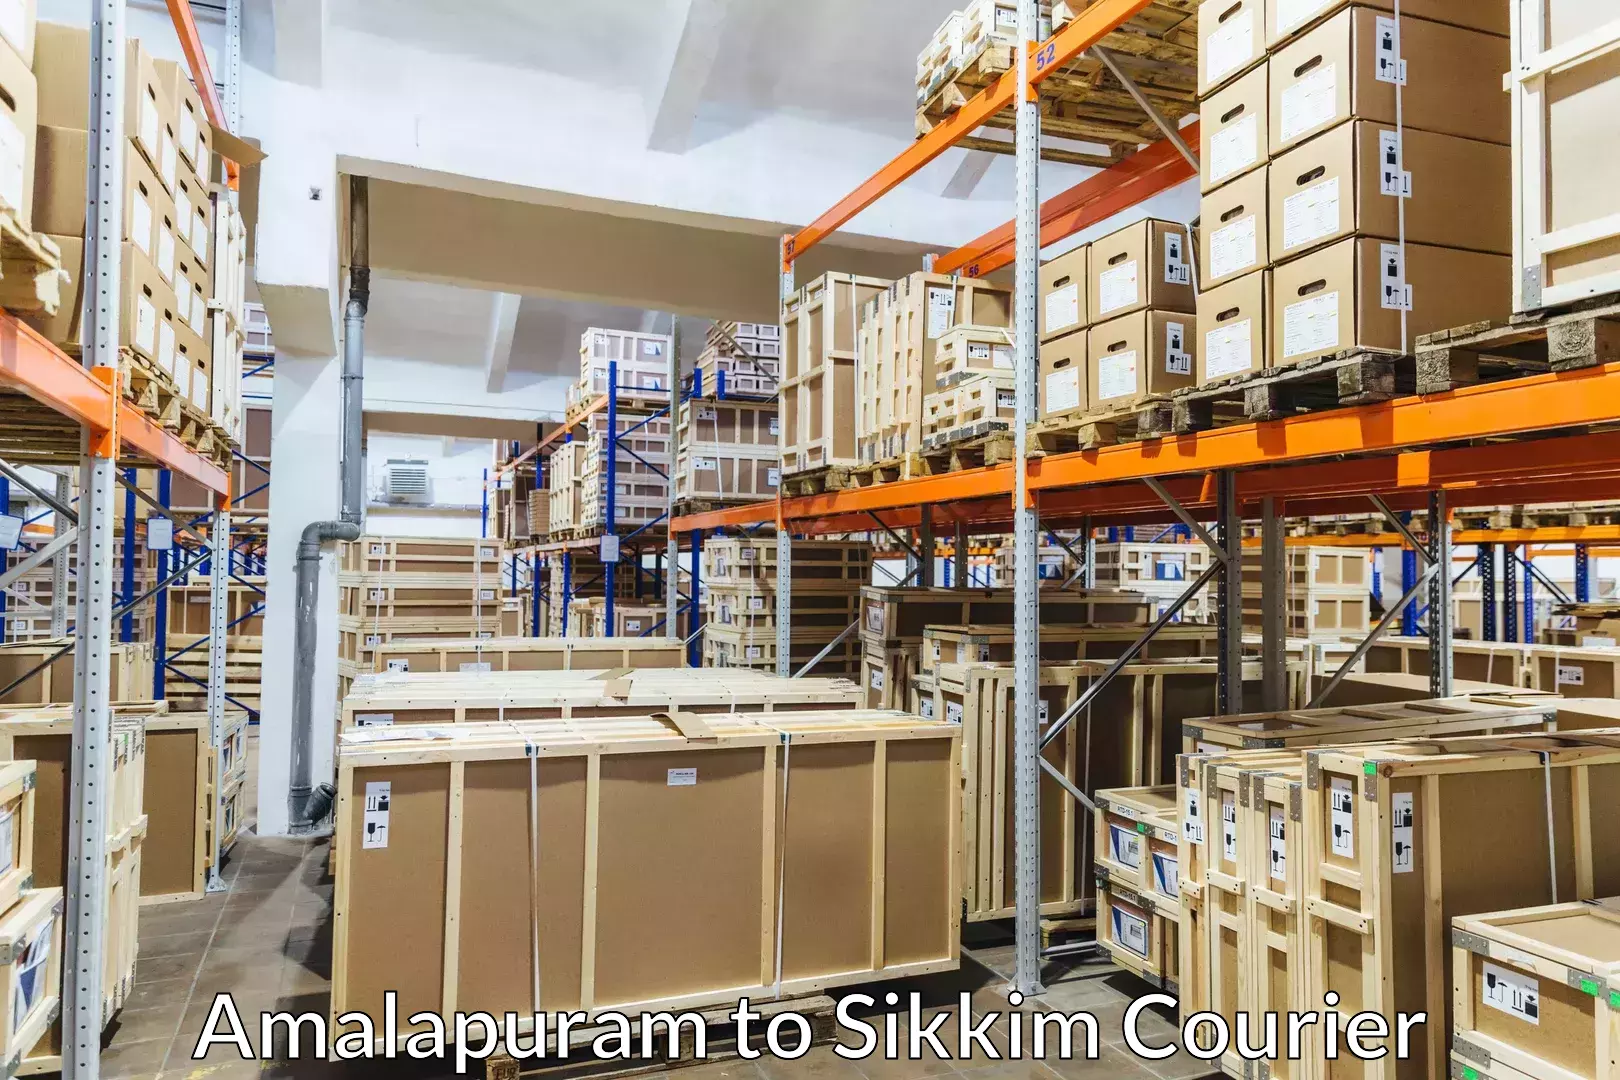 Professional moving assistance Amalapuram to NIT Sikkim